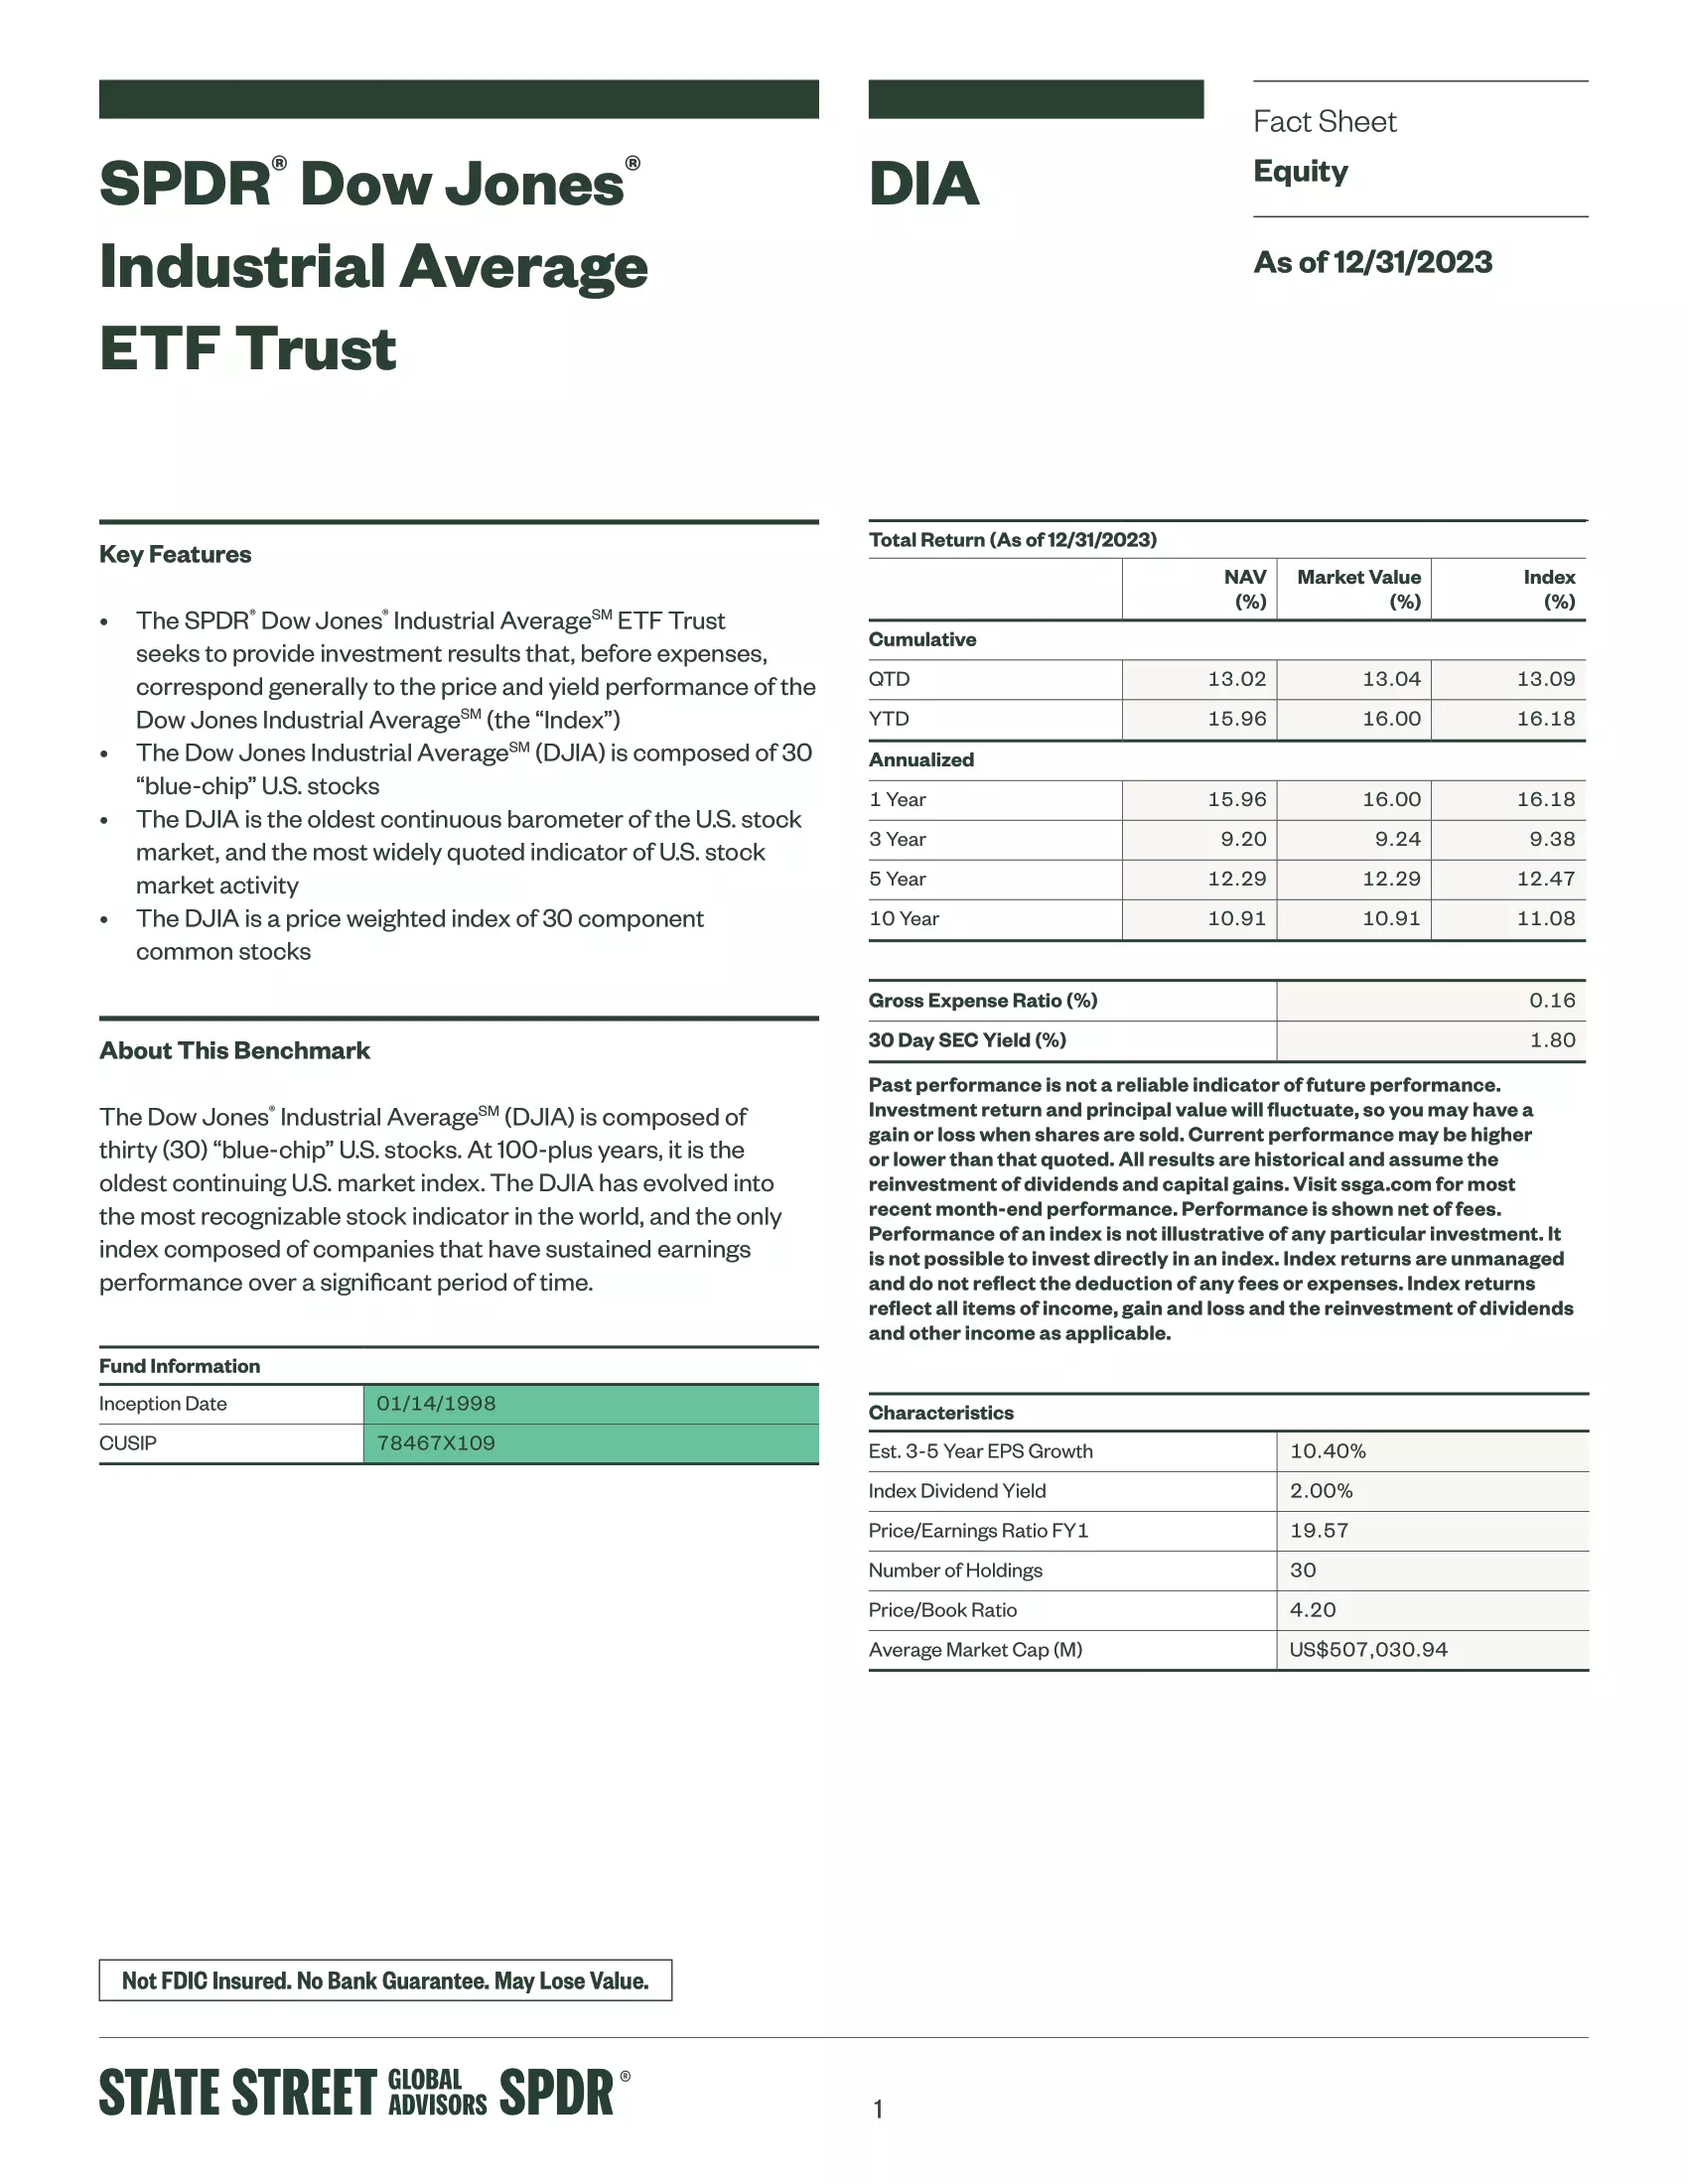 DIA: SPDR Dow Jones Industrial Average ETF Trust